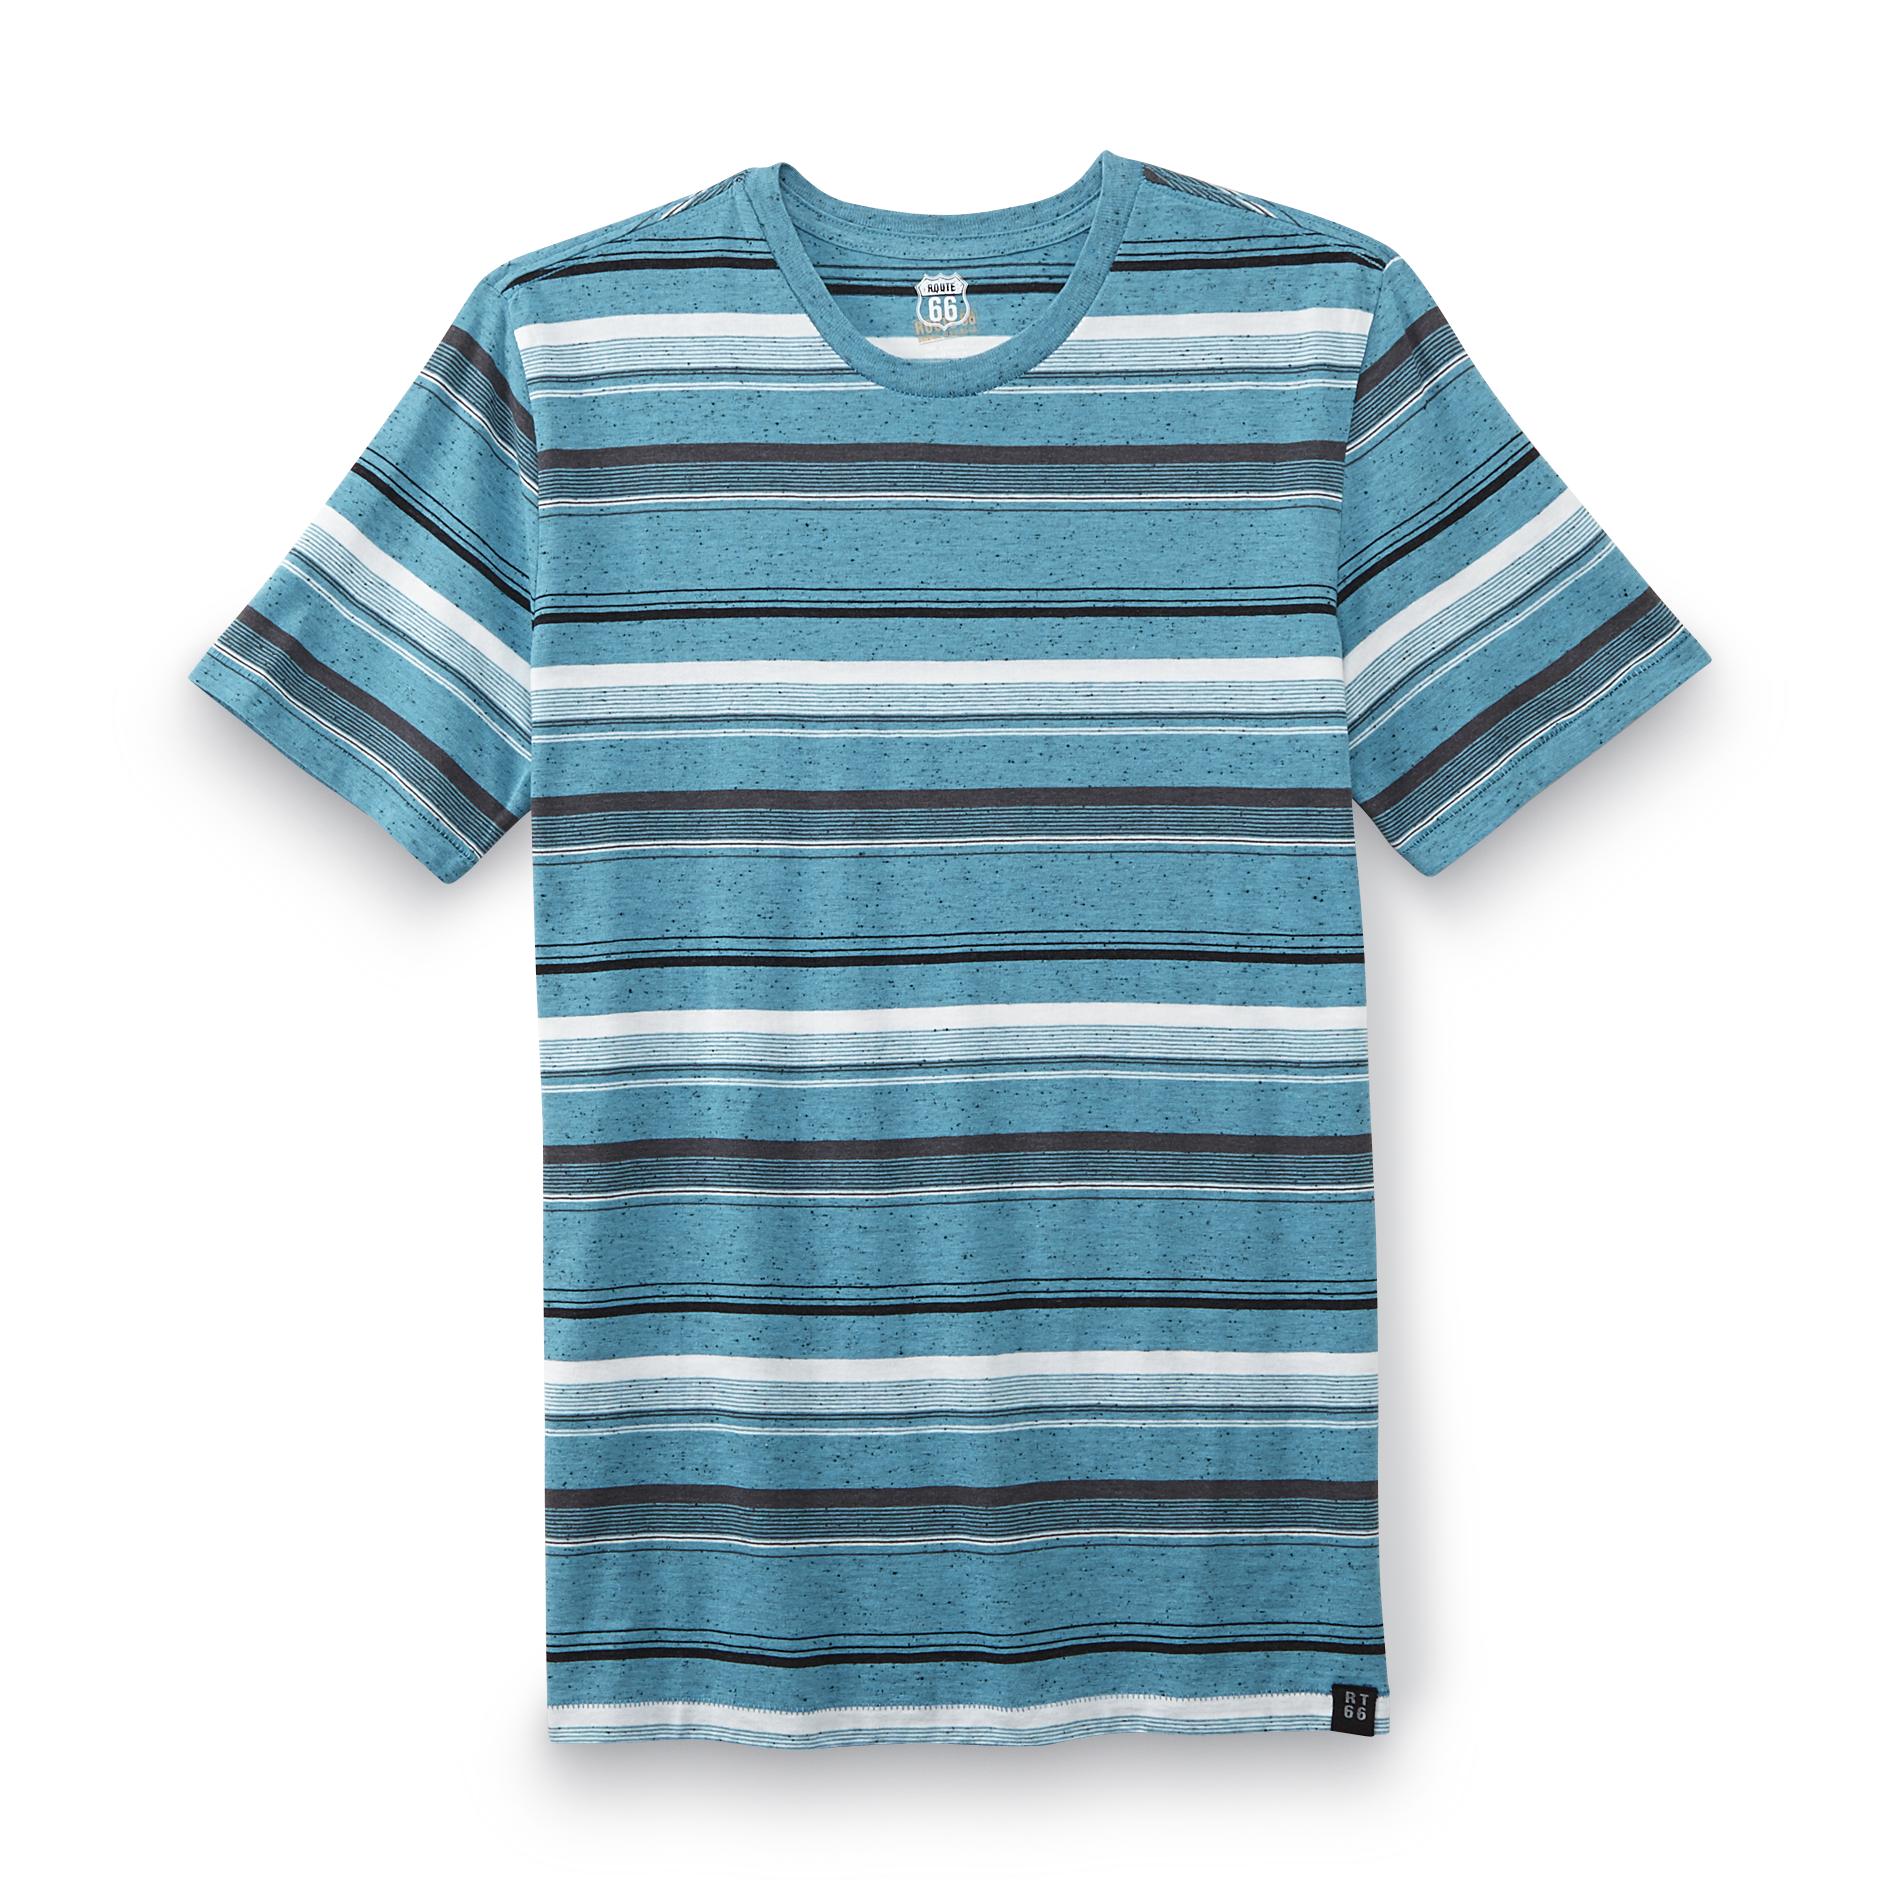 Route 66 Men's T-Shirt - Variegated Stripes